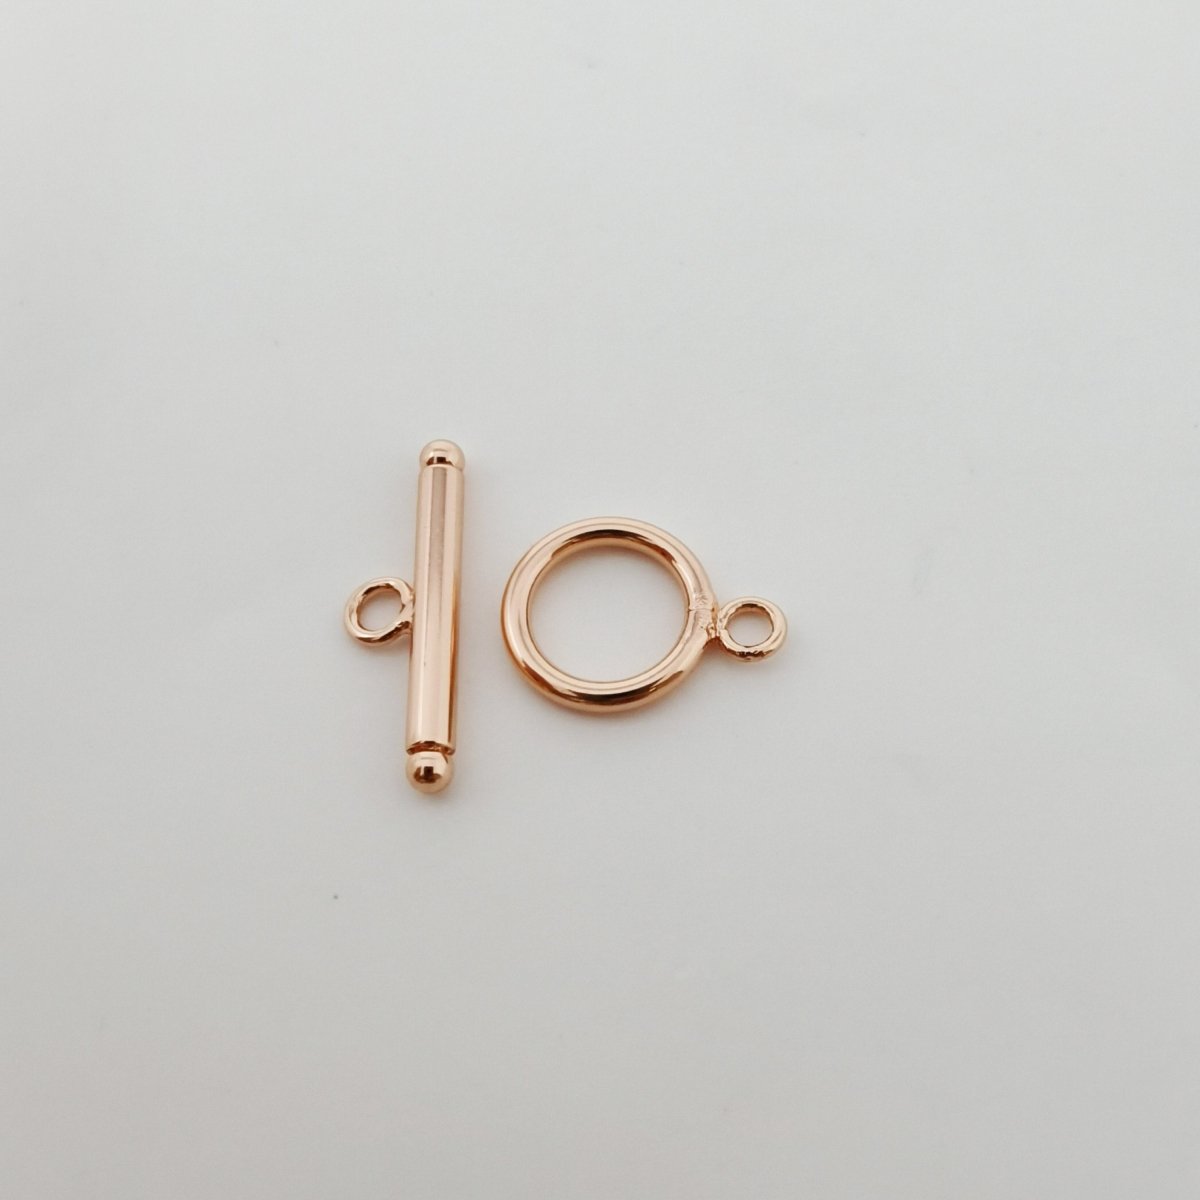 14mm 14K Gold Filled Toggle Clasp OT Clasp Finding for Necklace Bracelet Component K-175 K-556 K-779 K-784 - DLUXCA